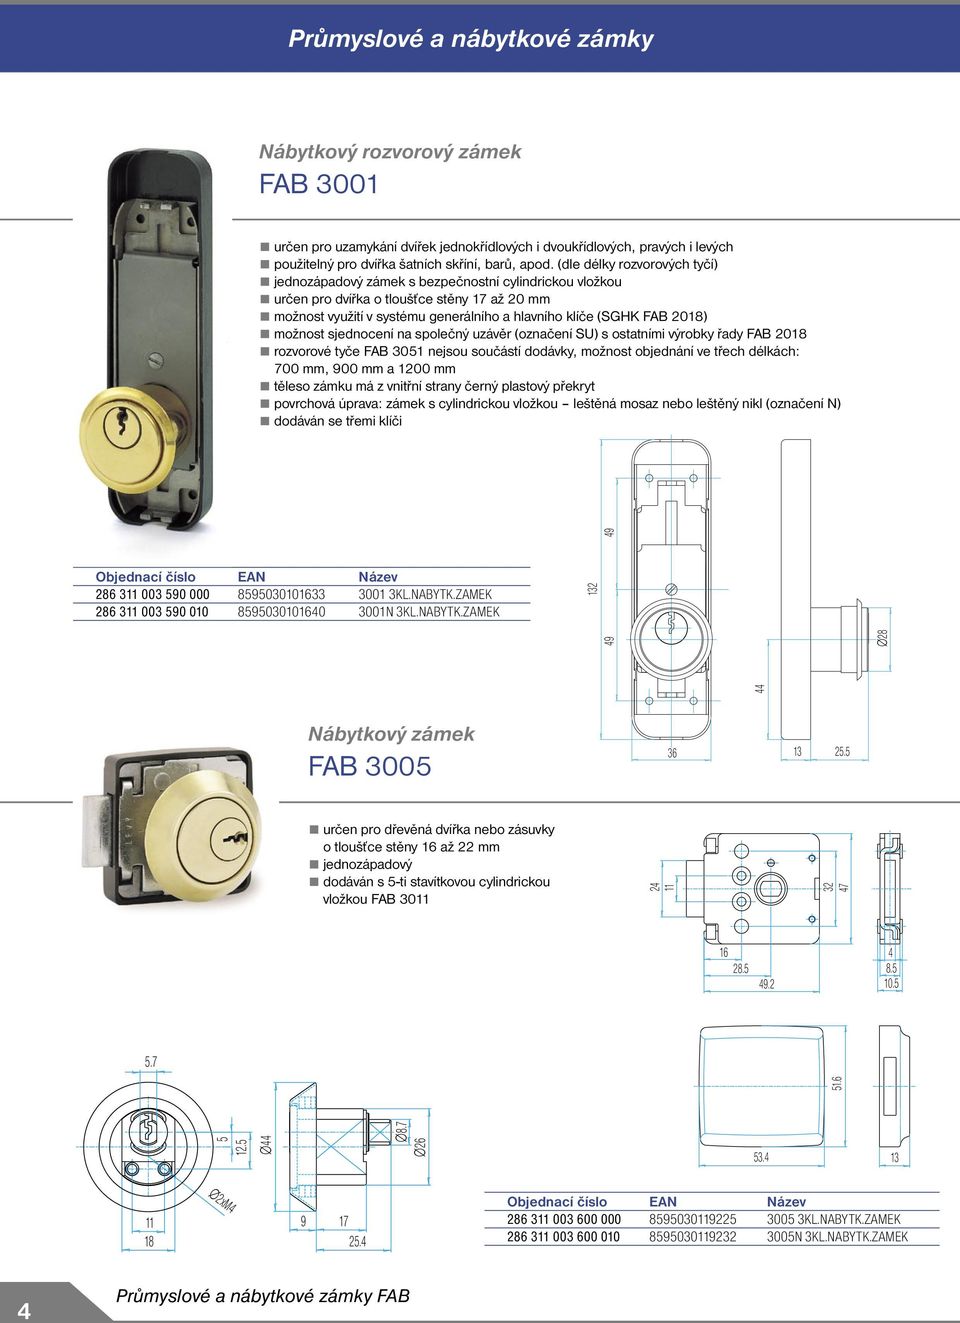 2018) možnost sjednocení na společný uzávěr (označení SU) s ostatními výrobky řady FAB 2018 rozvorové tyče FAB 3051 nejsou součástí dodávky, možnost objednání ve třech délkách: 700 mm, 900 mm a 1200